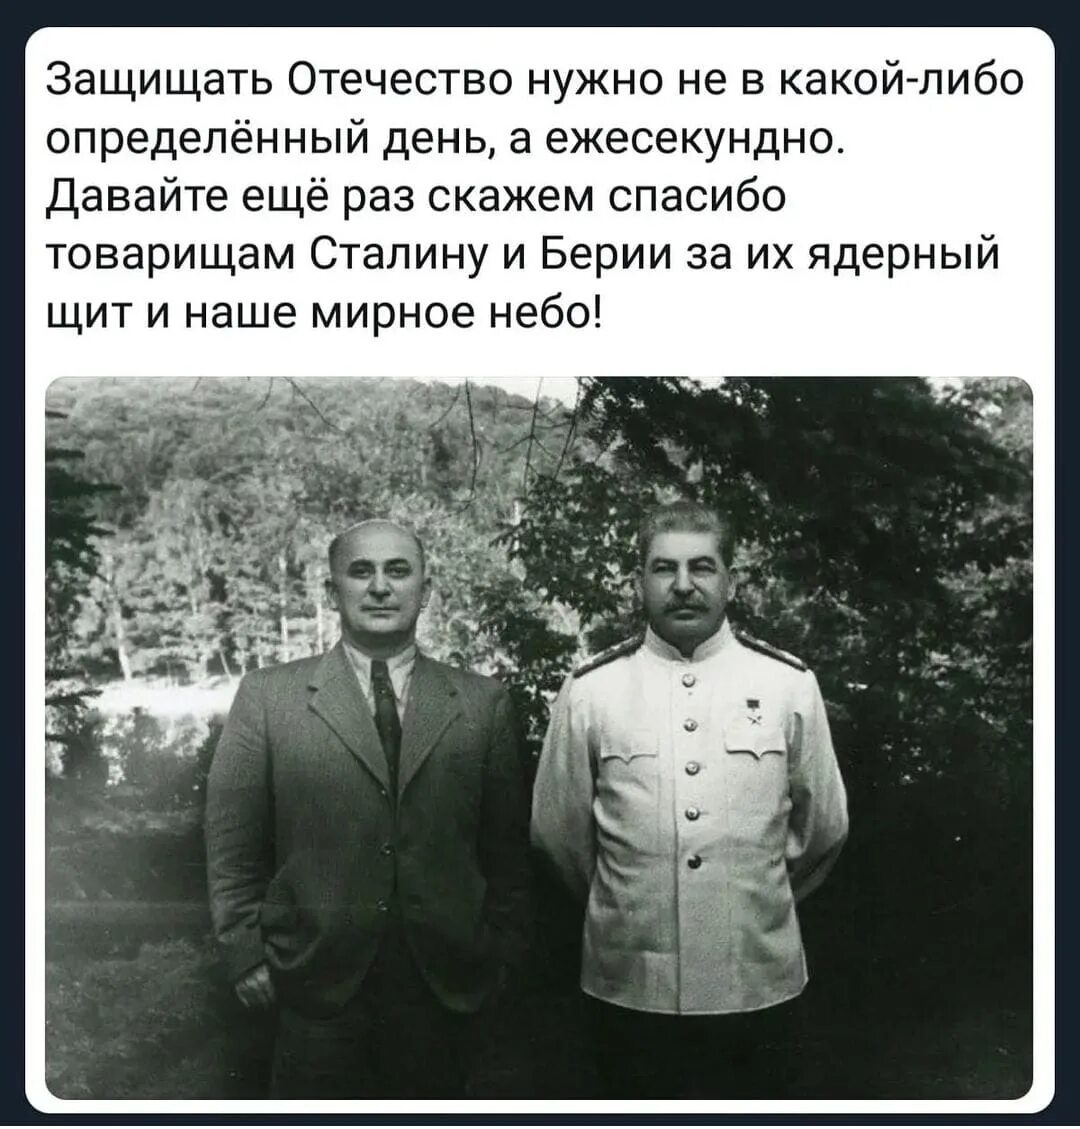 Причина ареста берии. Сталин и Берия. Сталин русский грузинского происхождения. Сталин я русский человек грузинской национальности. Сталинский ядерный щит.